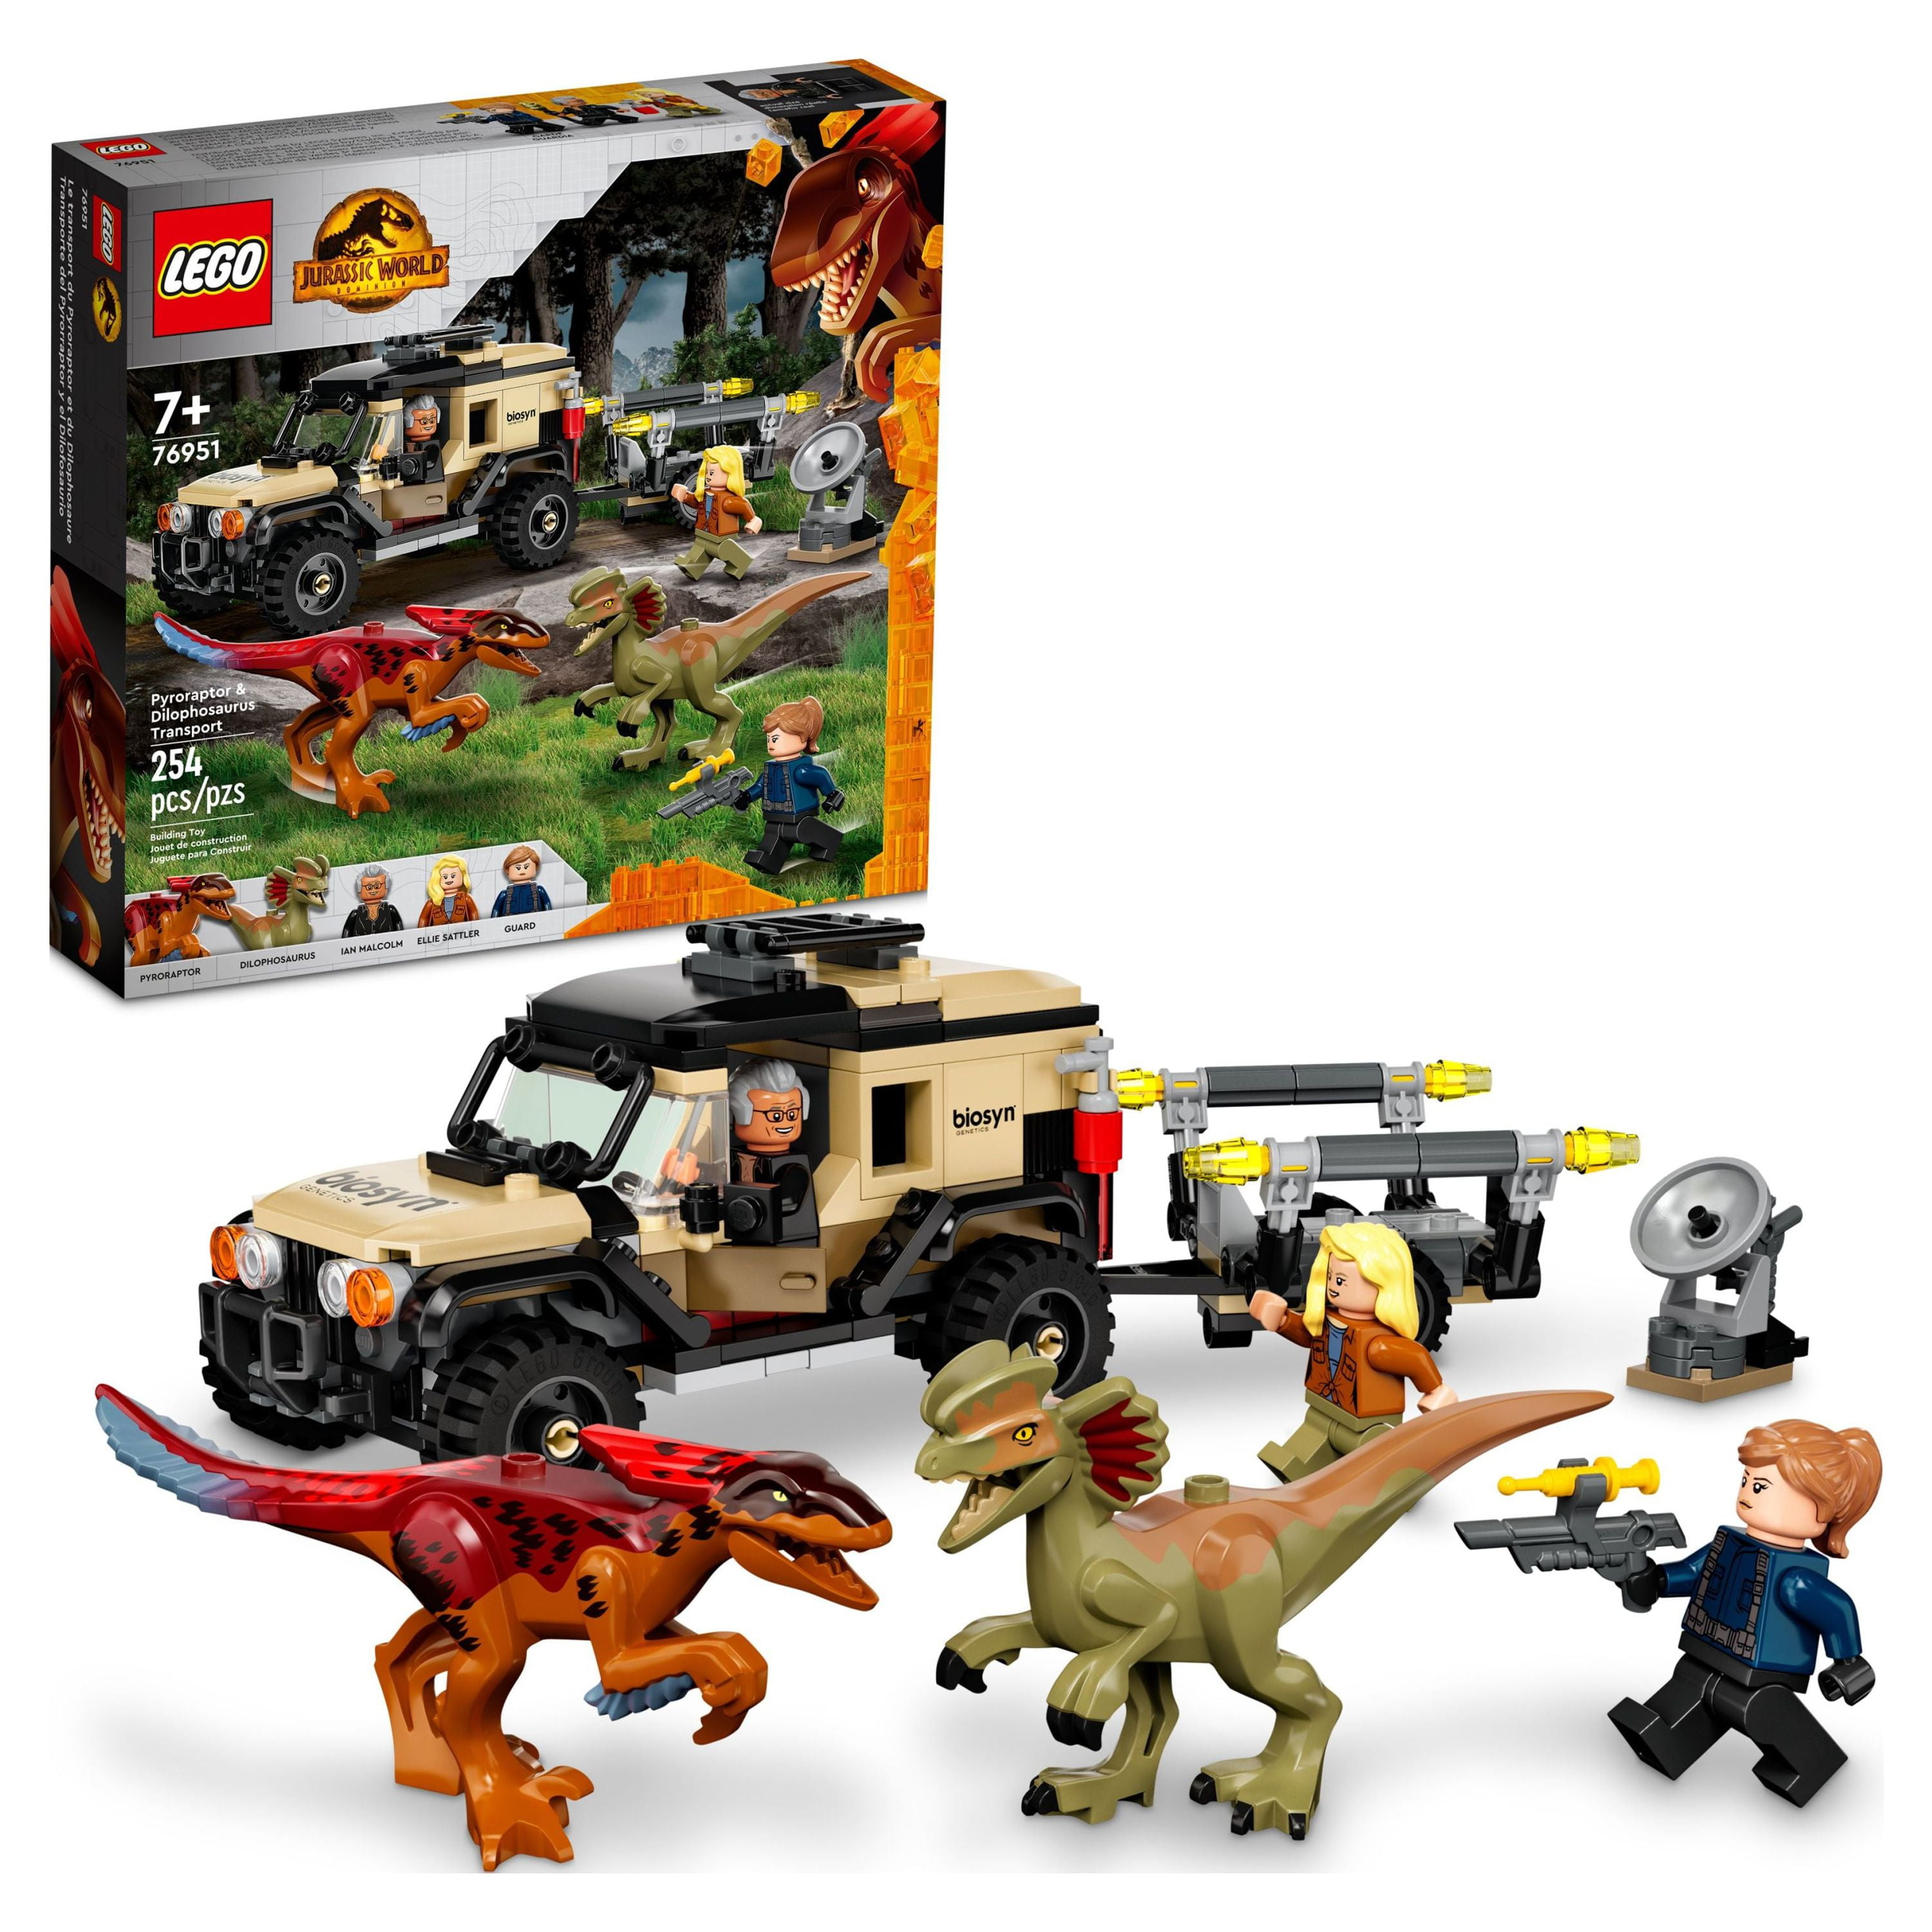 Lego Jurasic World Le Transport Du Pyroraptor & Du Dilophosaurus - 76951